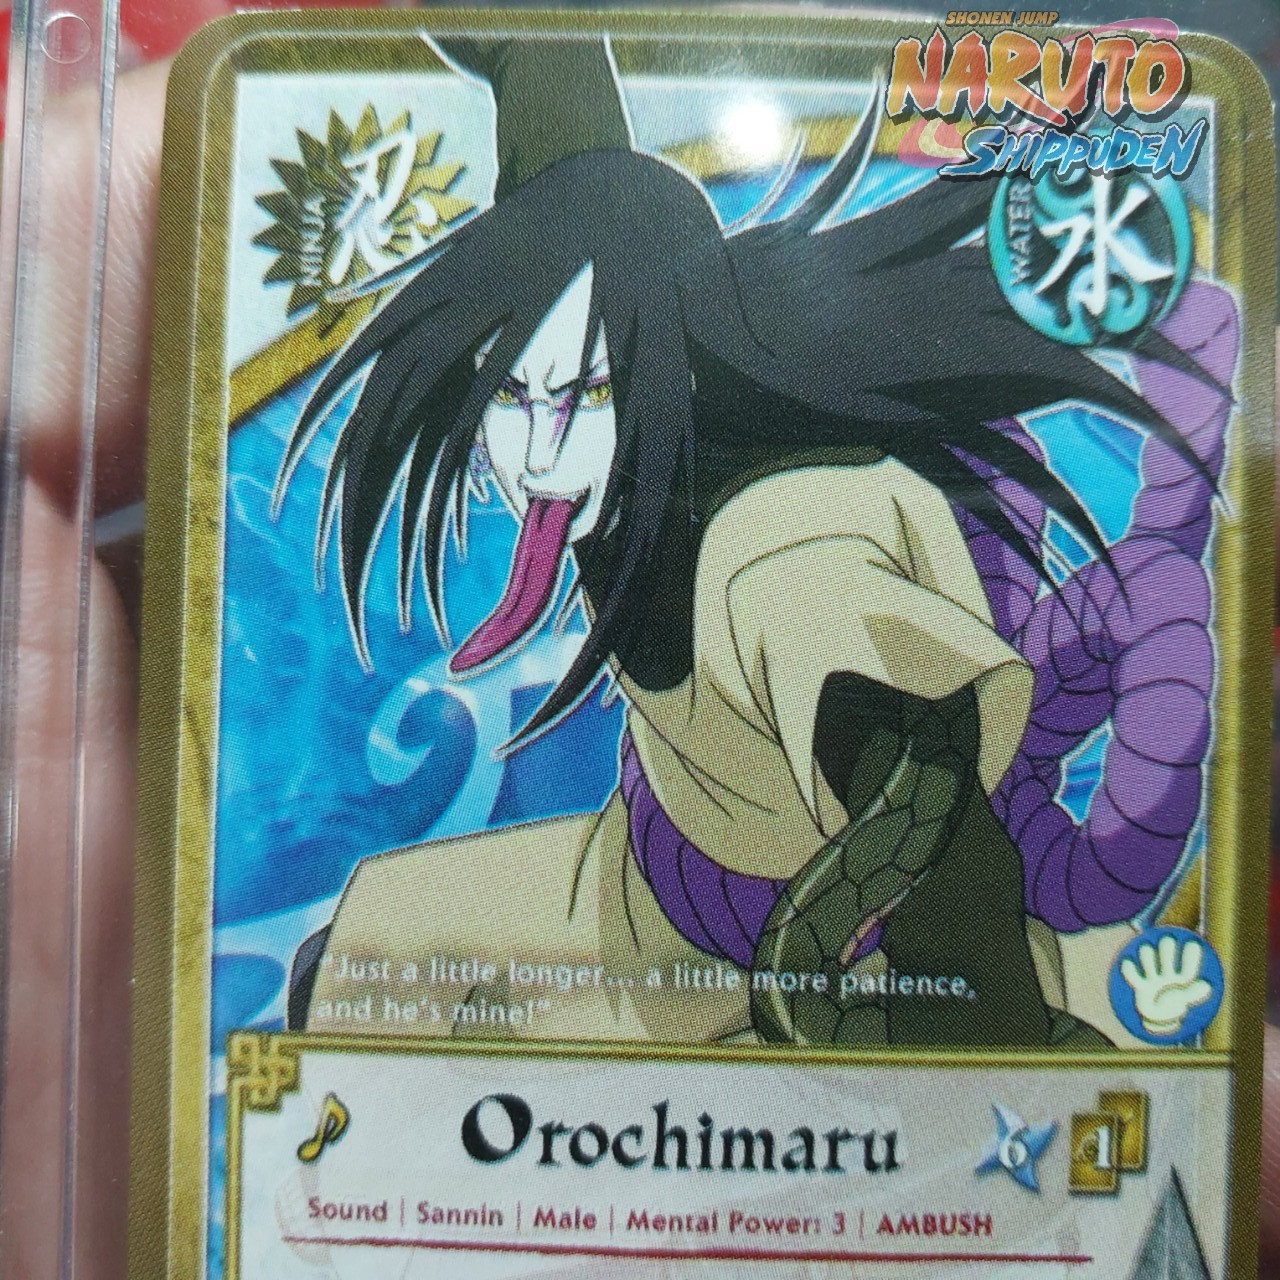 Thẻ Naruto Orochimaru 985 1 trong tam nin rắn Tặng kèm top loader bảo vệ 2054 1 20